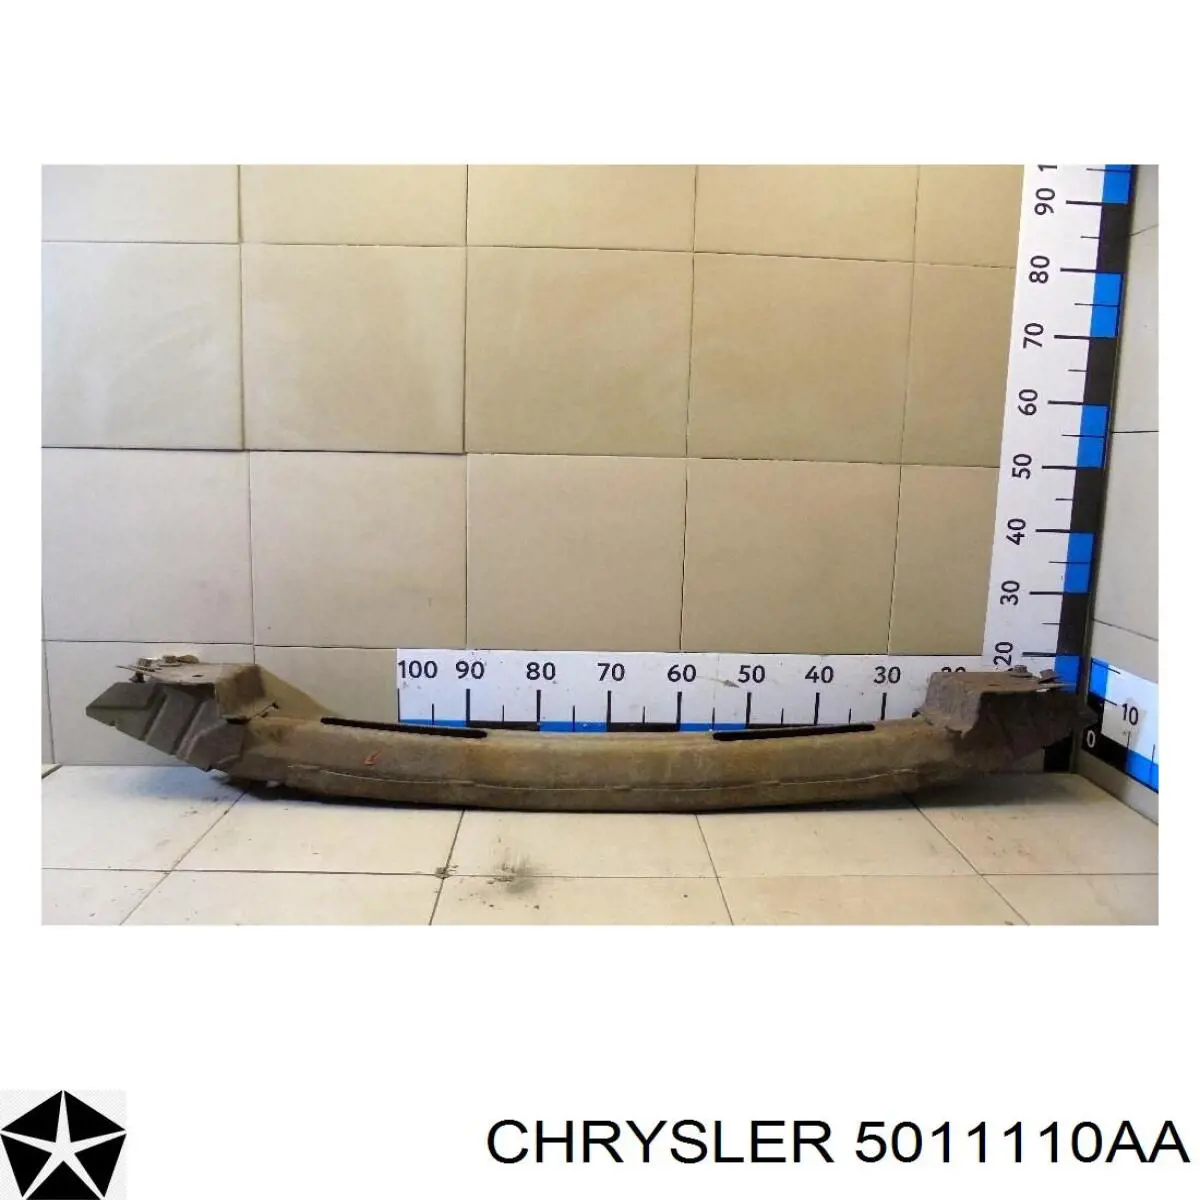 5011110AA Chrysler refuerzo parachoque delantero